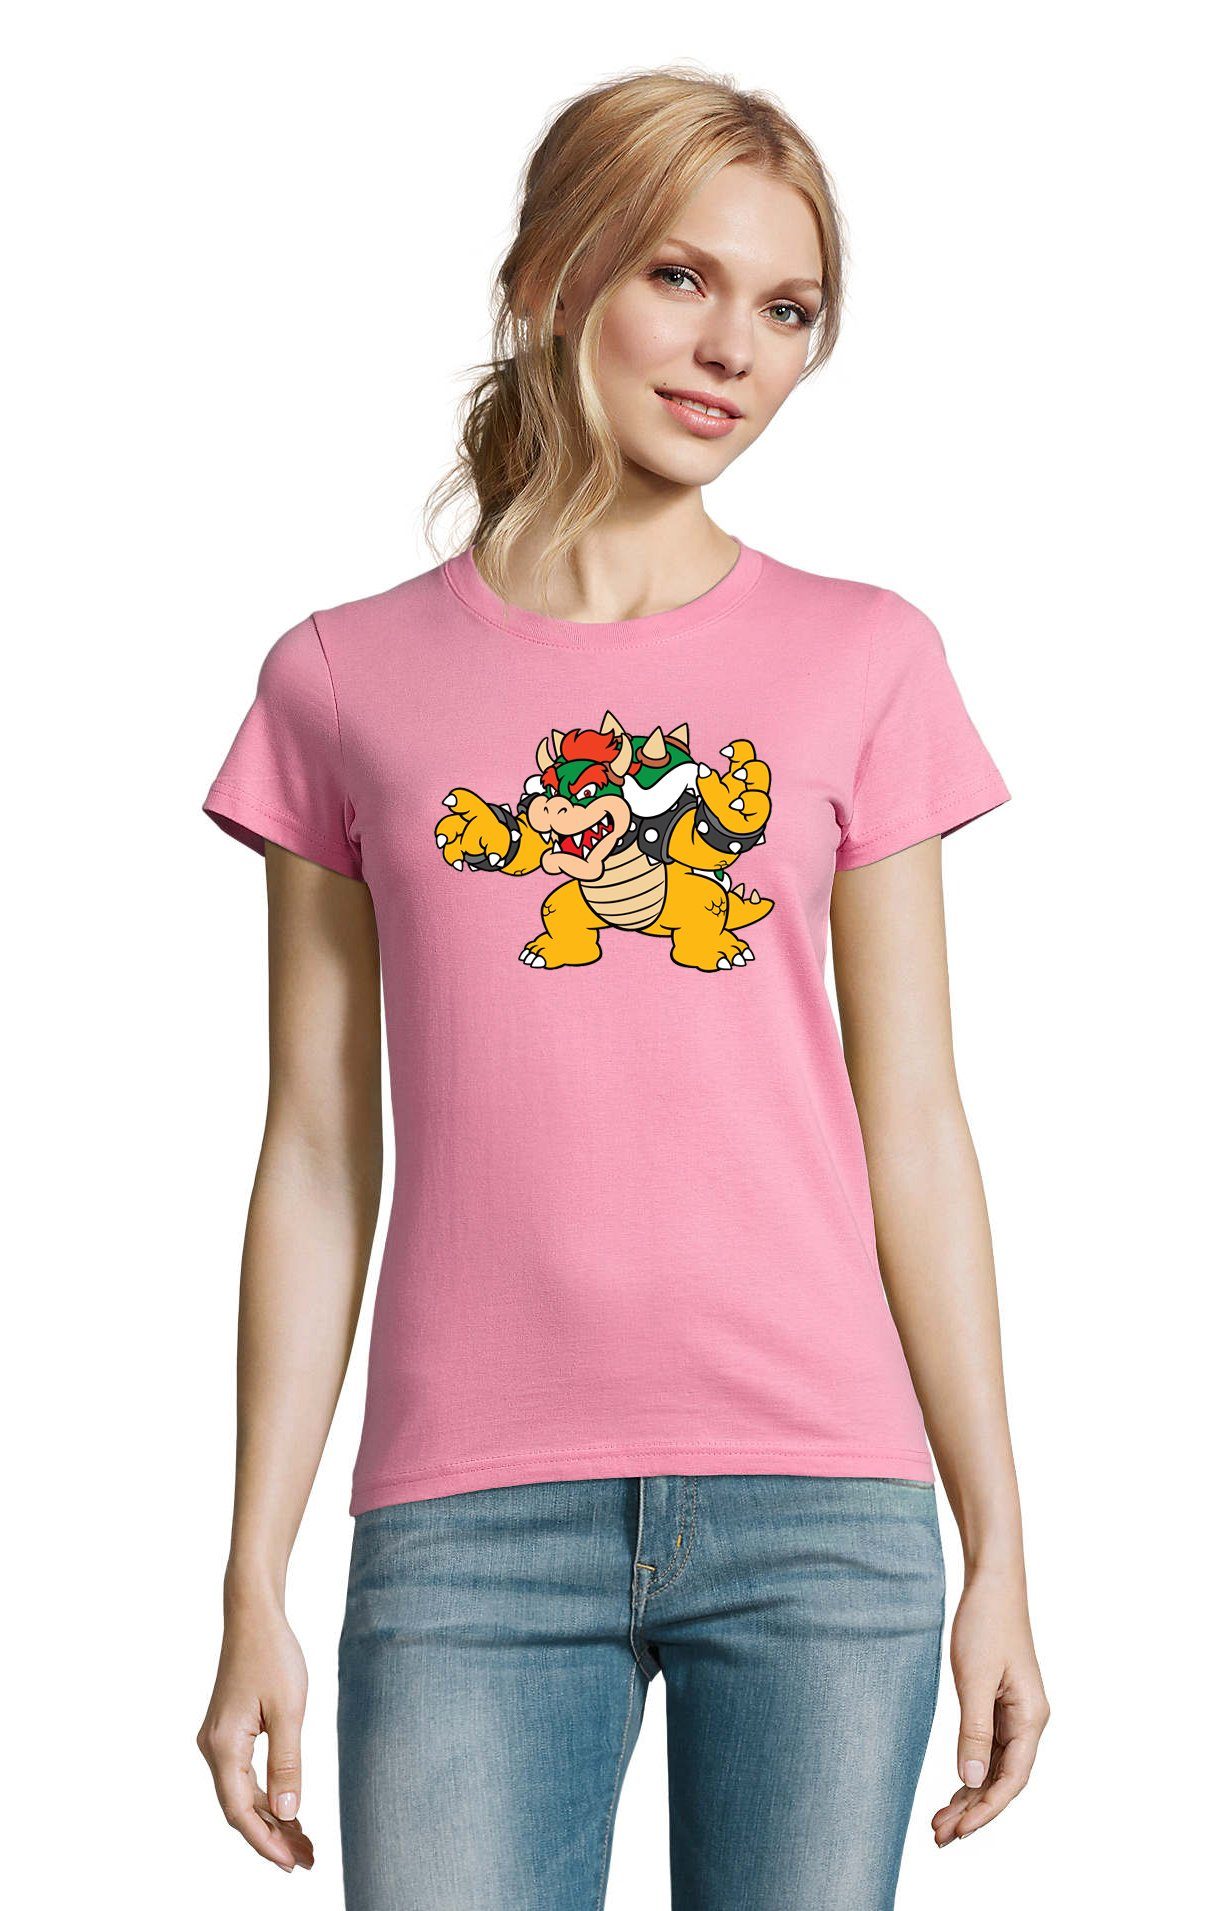 Blondie & Brownie T-Shirt Damen Bowser Nintendo Mario Yoshi Luigi Game Gamer Gaming Konsole Rosa